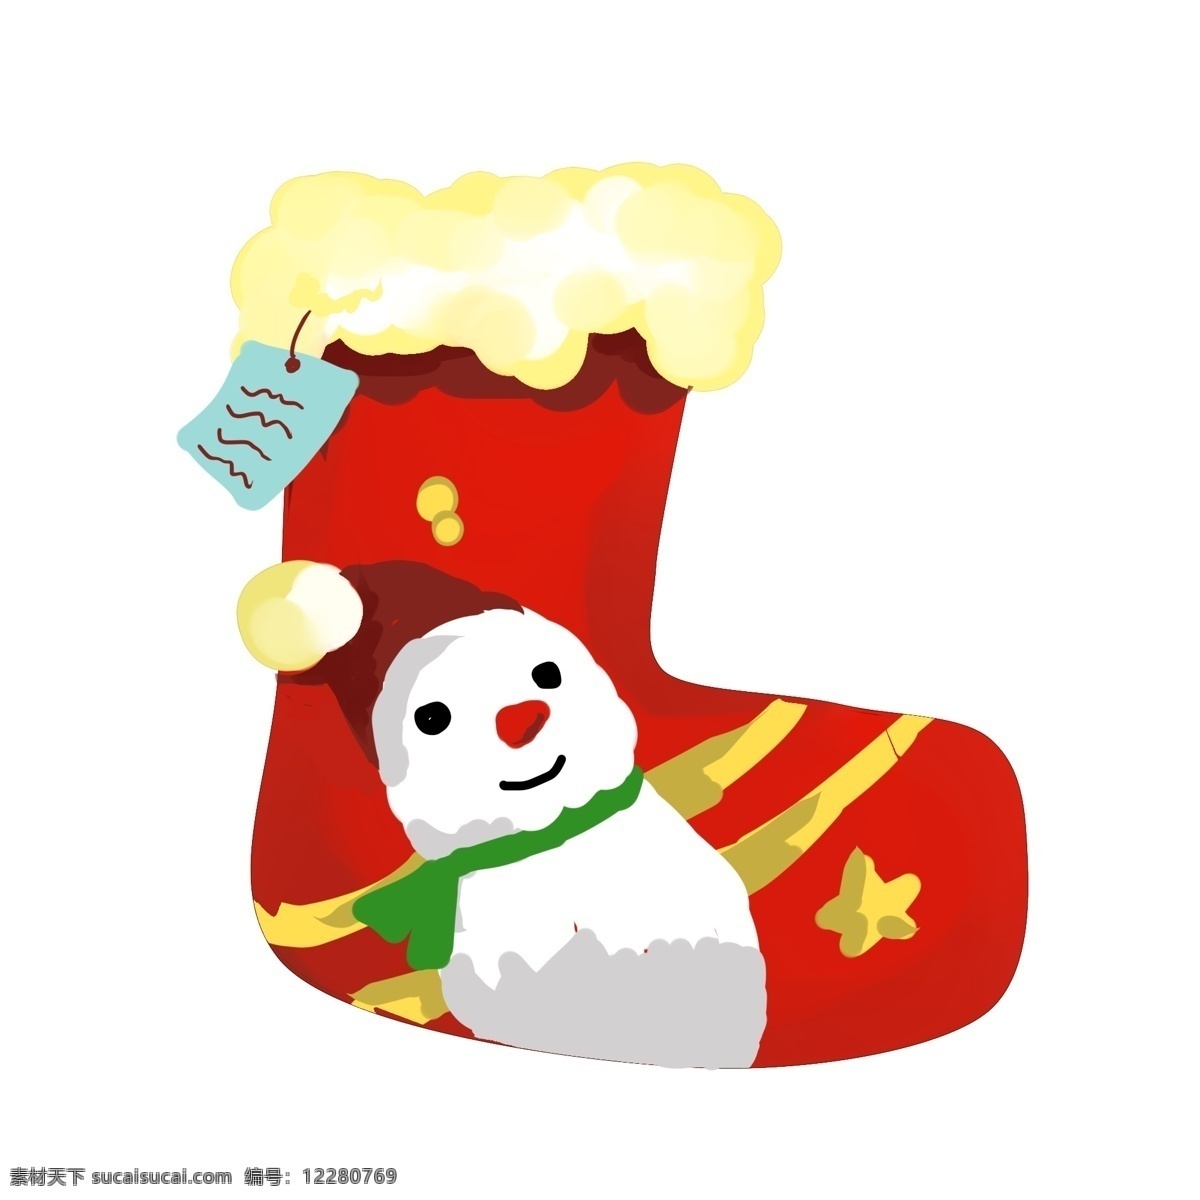 雪人 红色 圣诞 袜子 卡通袜子 棉袜 厚袜子 圣诞袜 冬季 冬天 寒冷 御寒 保暖 红色袜子 棉织品 白色雪人